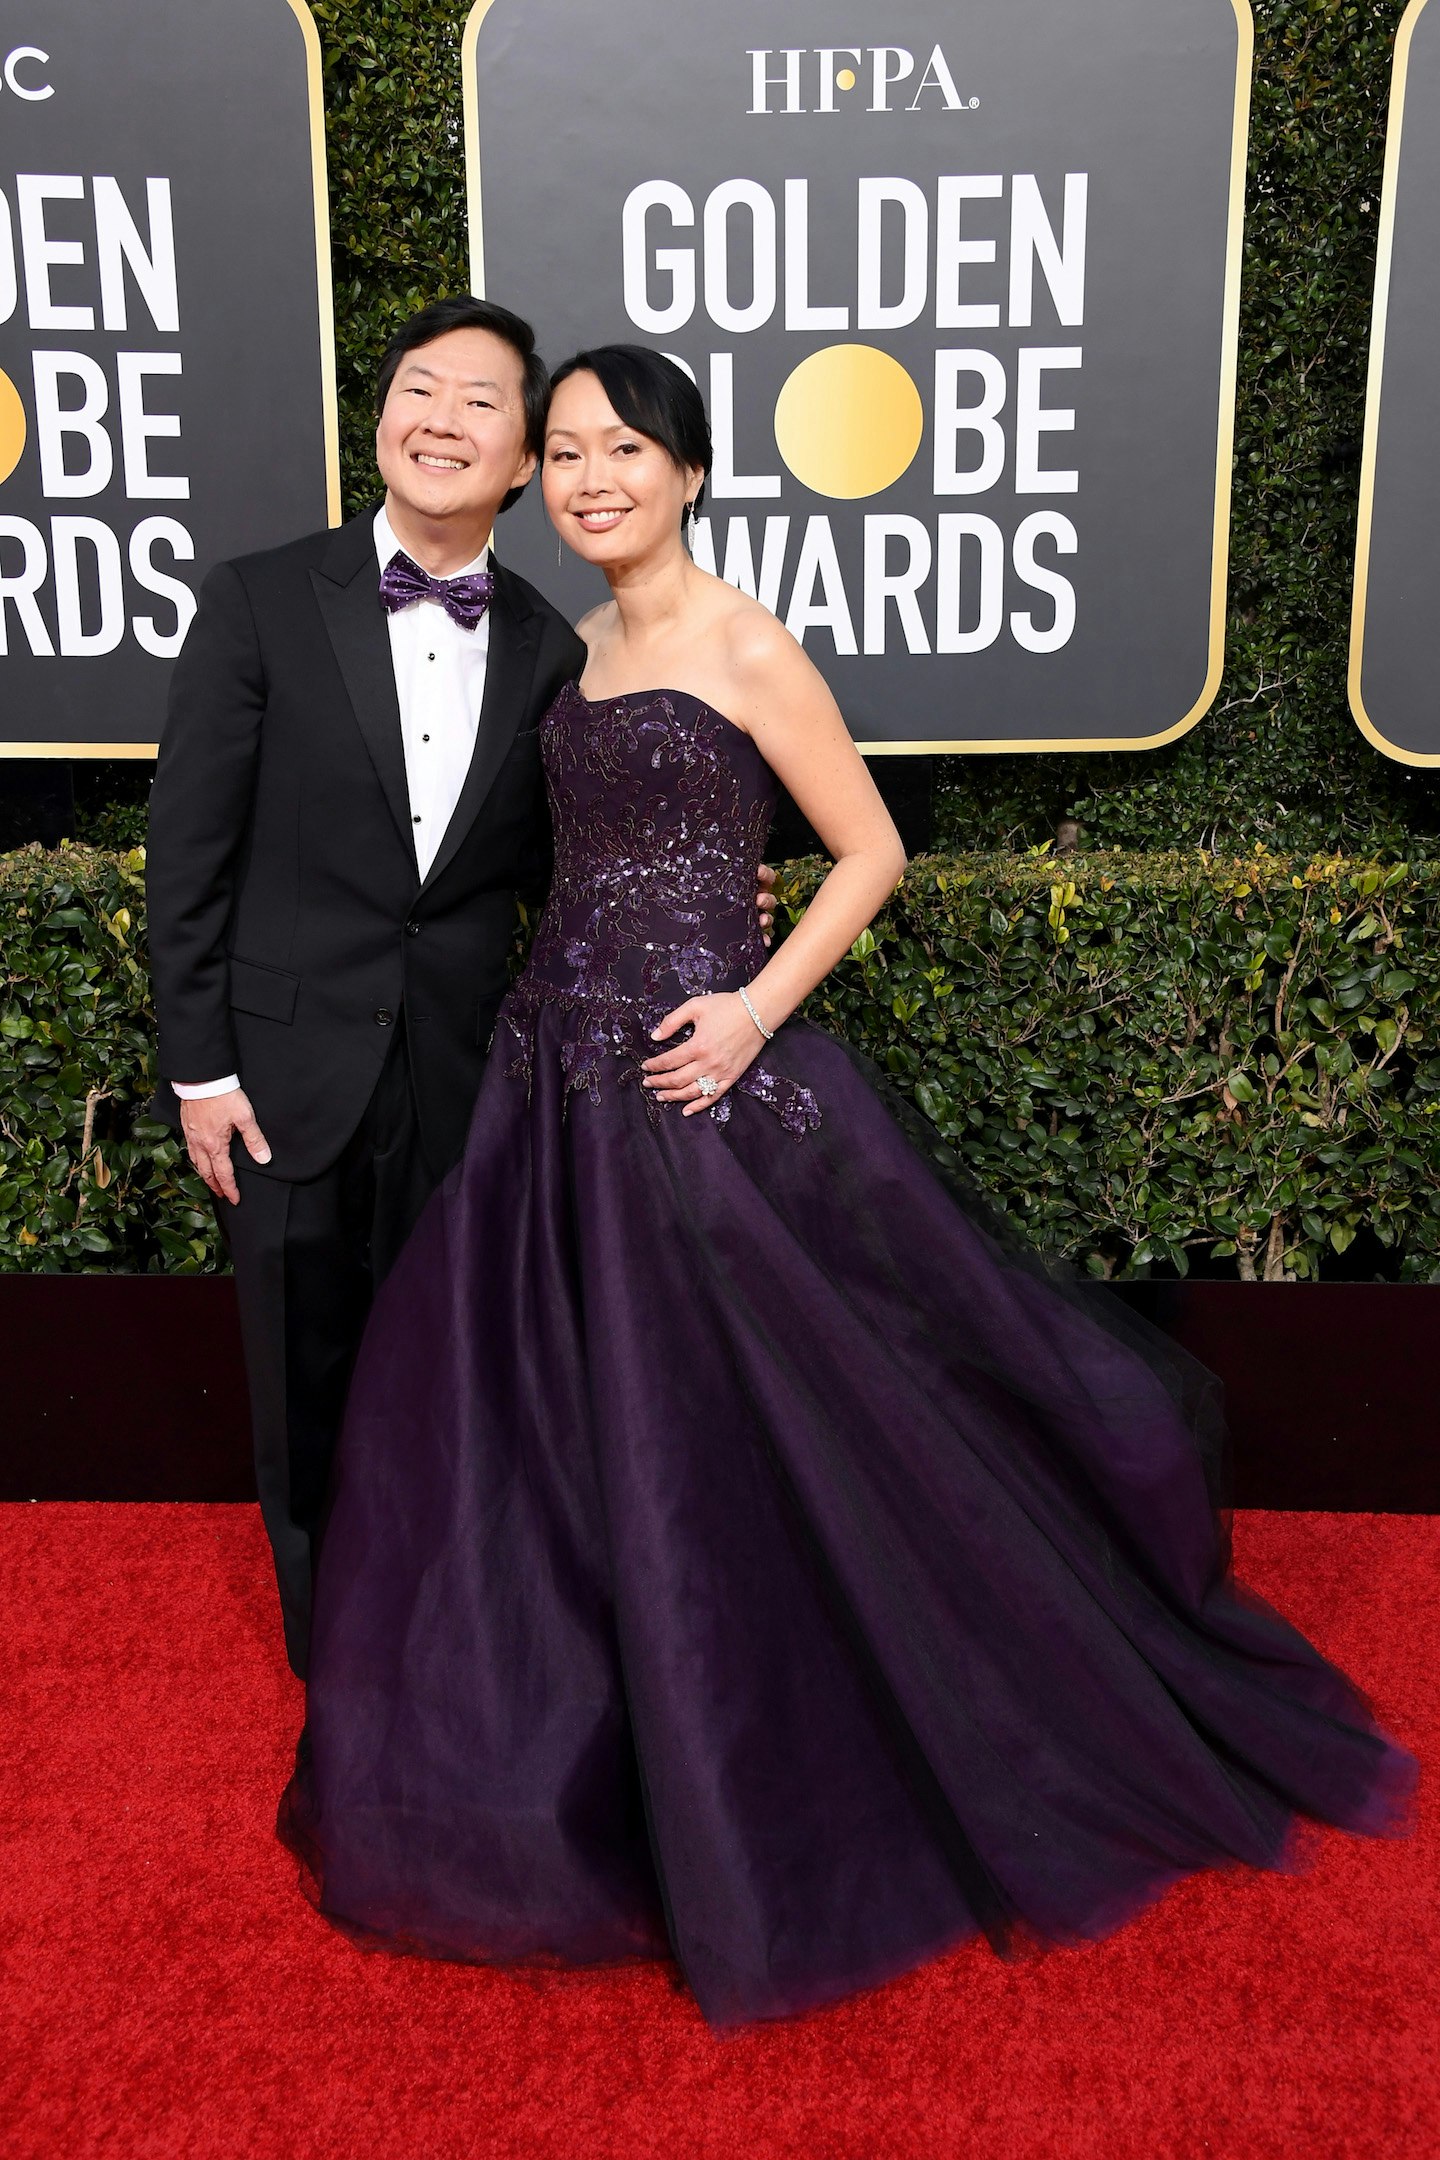 Ken Jeong and Tran Jeong at the 2019 Golden Globes